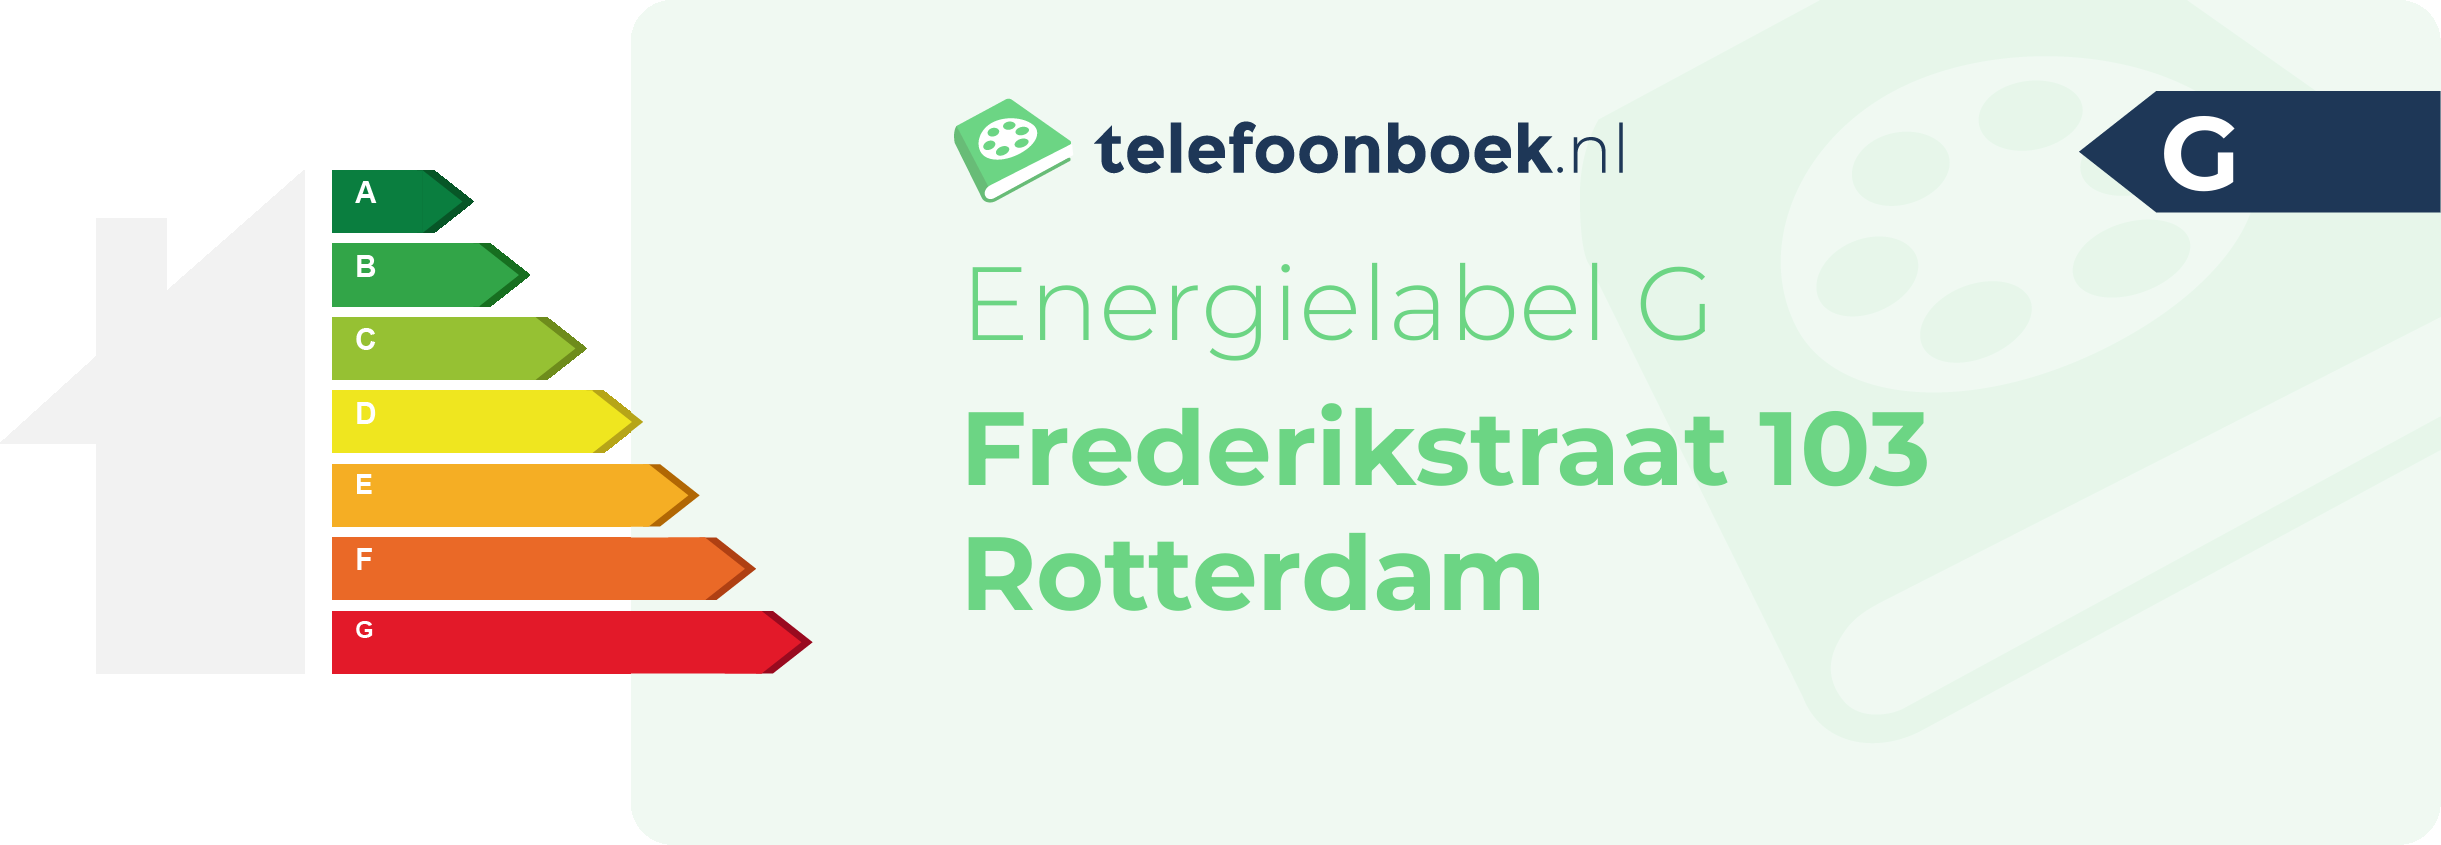 Energielabel Frederikstraat 103 Rotterdam